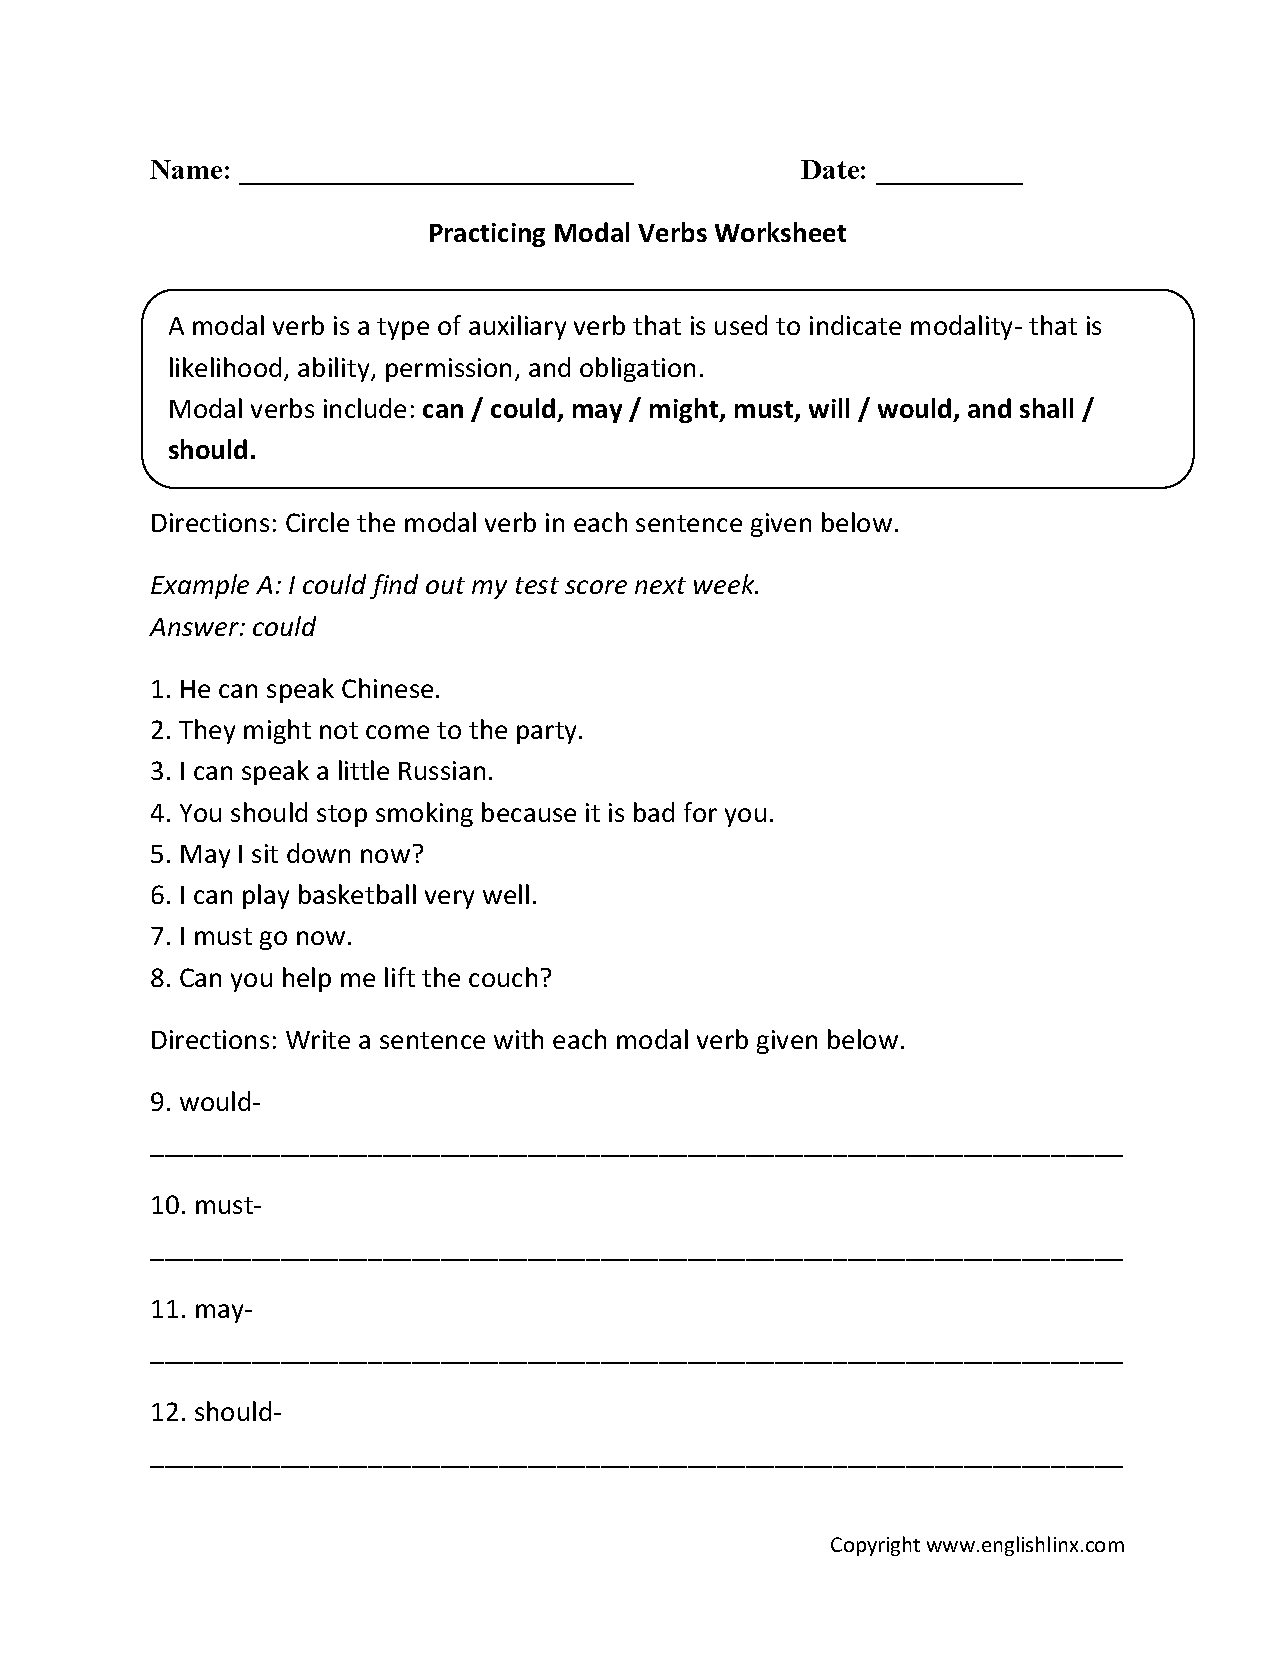 Practicing Modal Verbs Worksheets | Verb Worksheets, Free